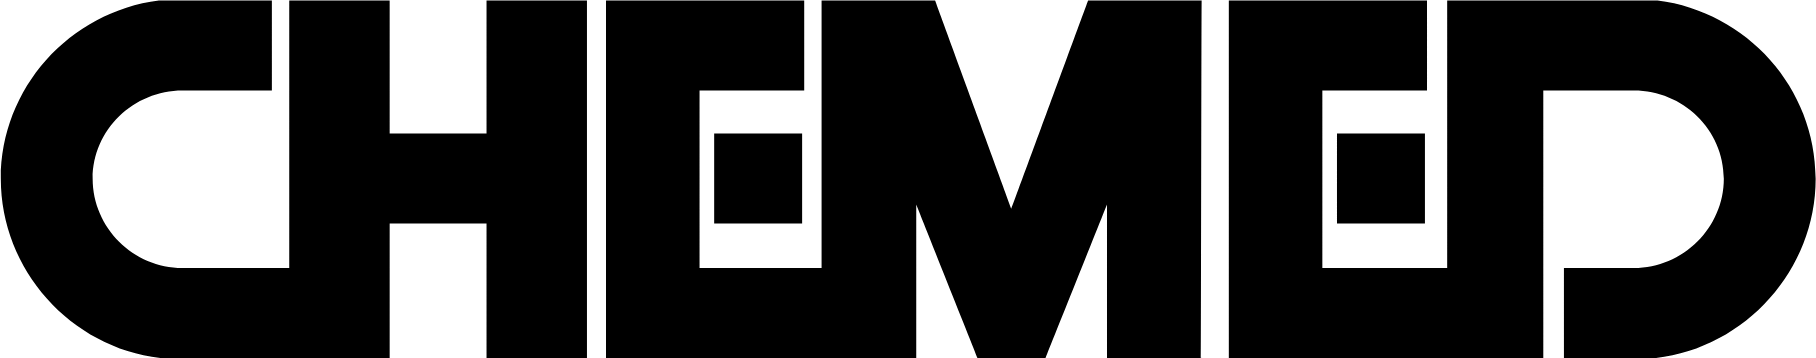 Chemed logo (PNG transparent)